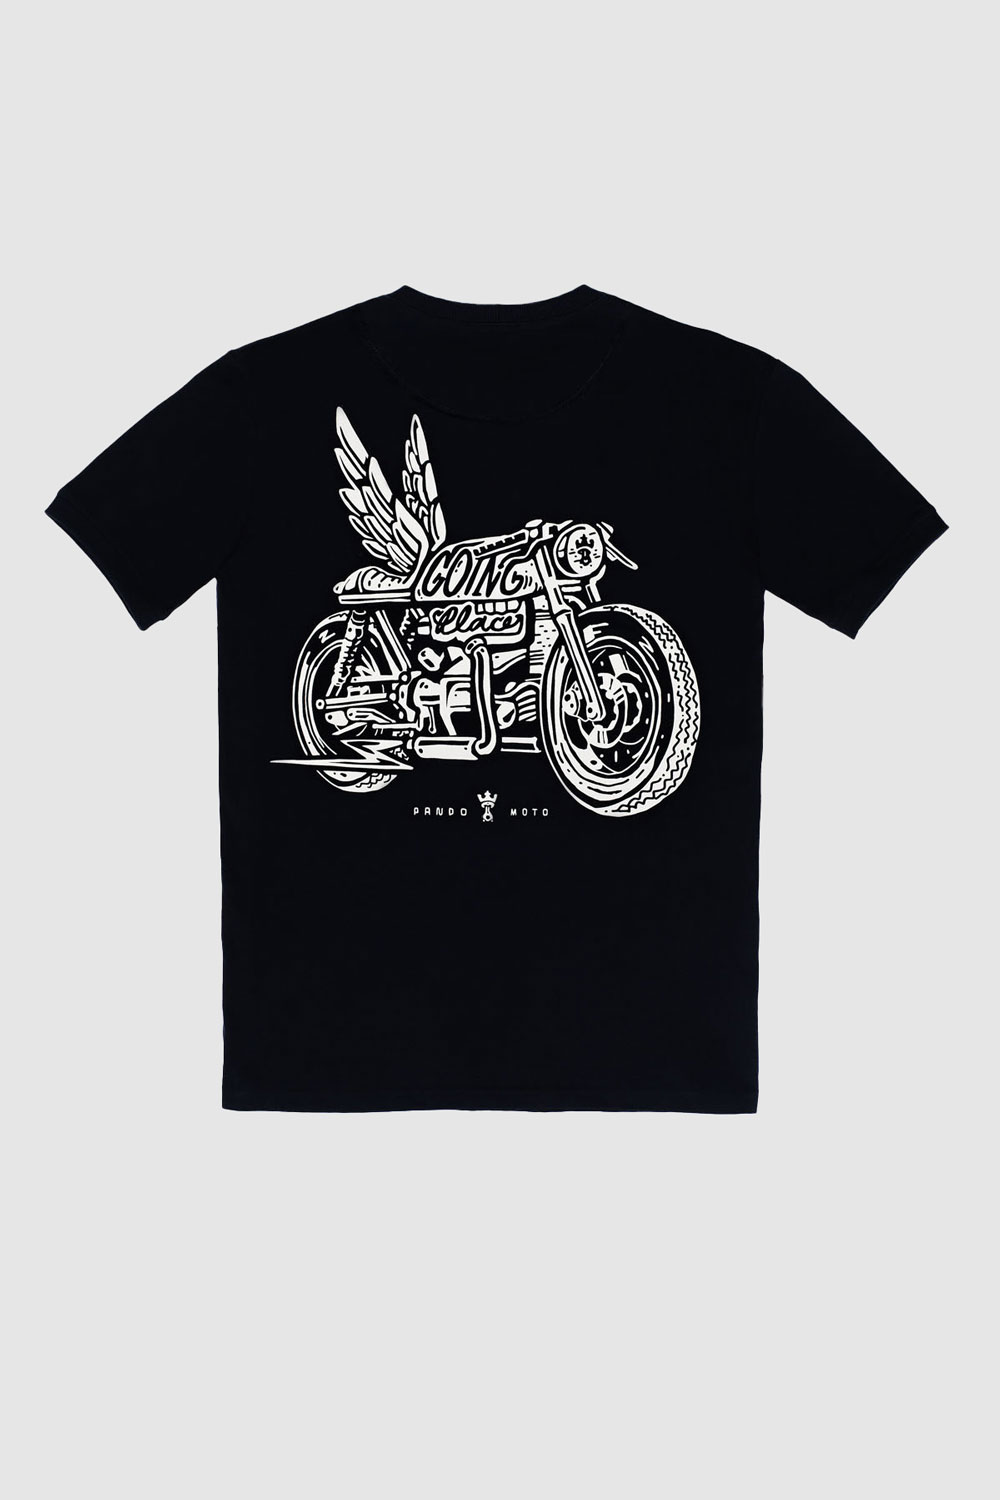 MIKE MOTO WING 1 - T-Shirt für Biker in Regular Fit, Unisex 1